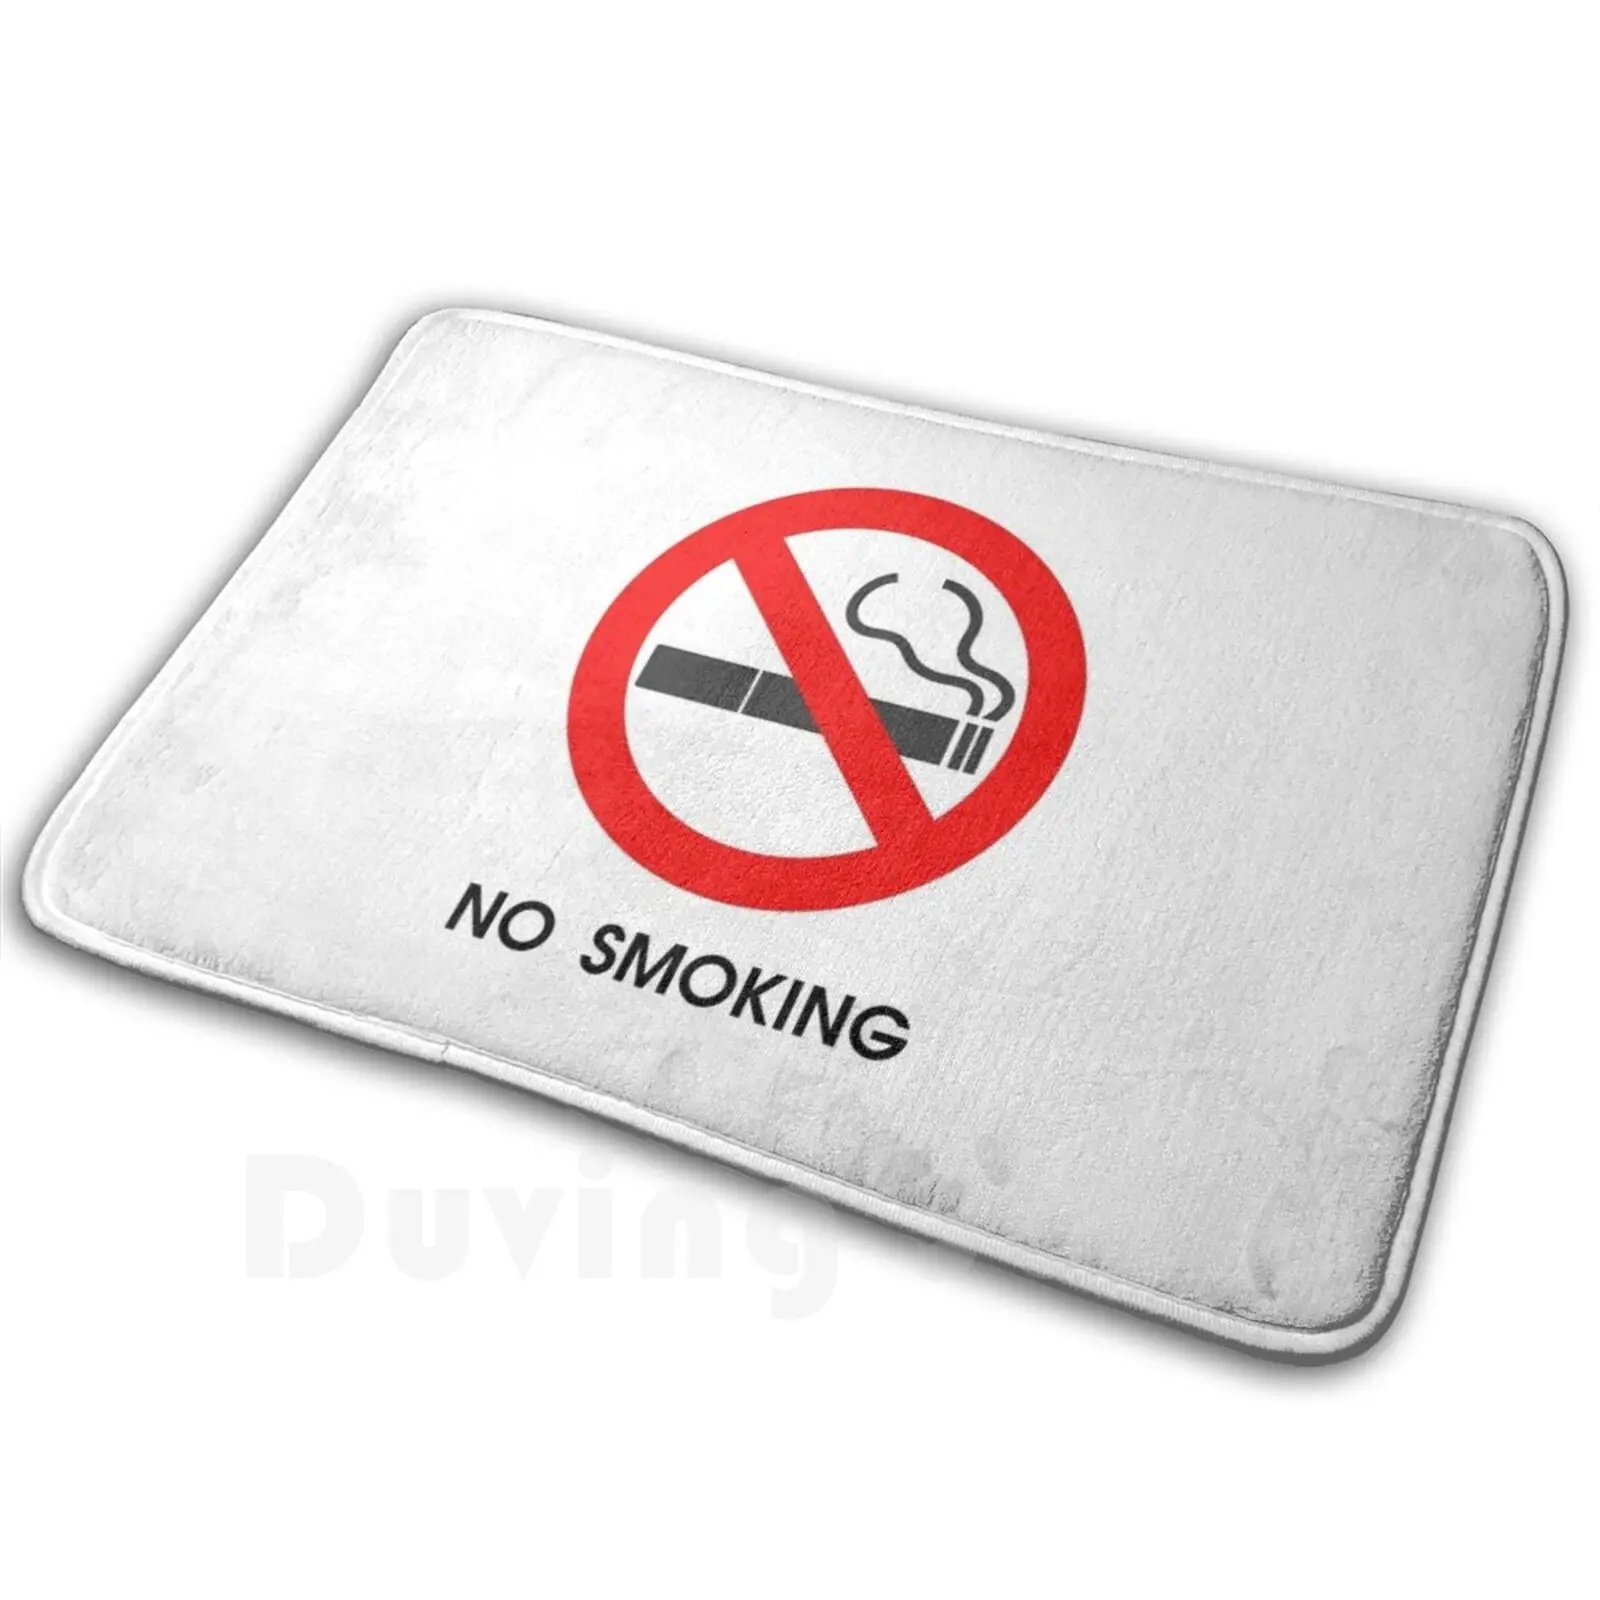 

No Smoking Carpet Mat Rug Cushion Soft No Smoking Sign Smoking Not Allowed No Dont Smoke Smoke